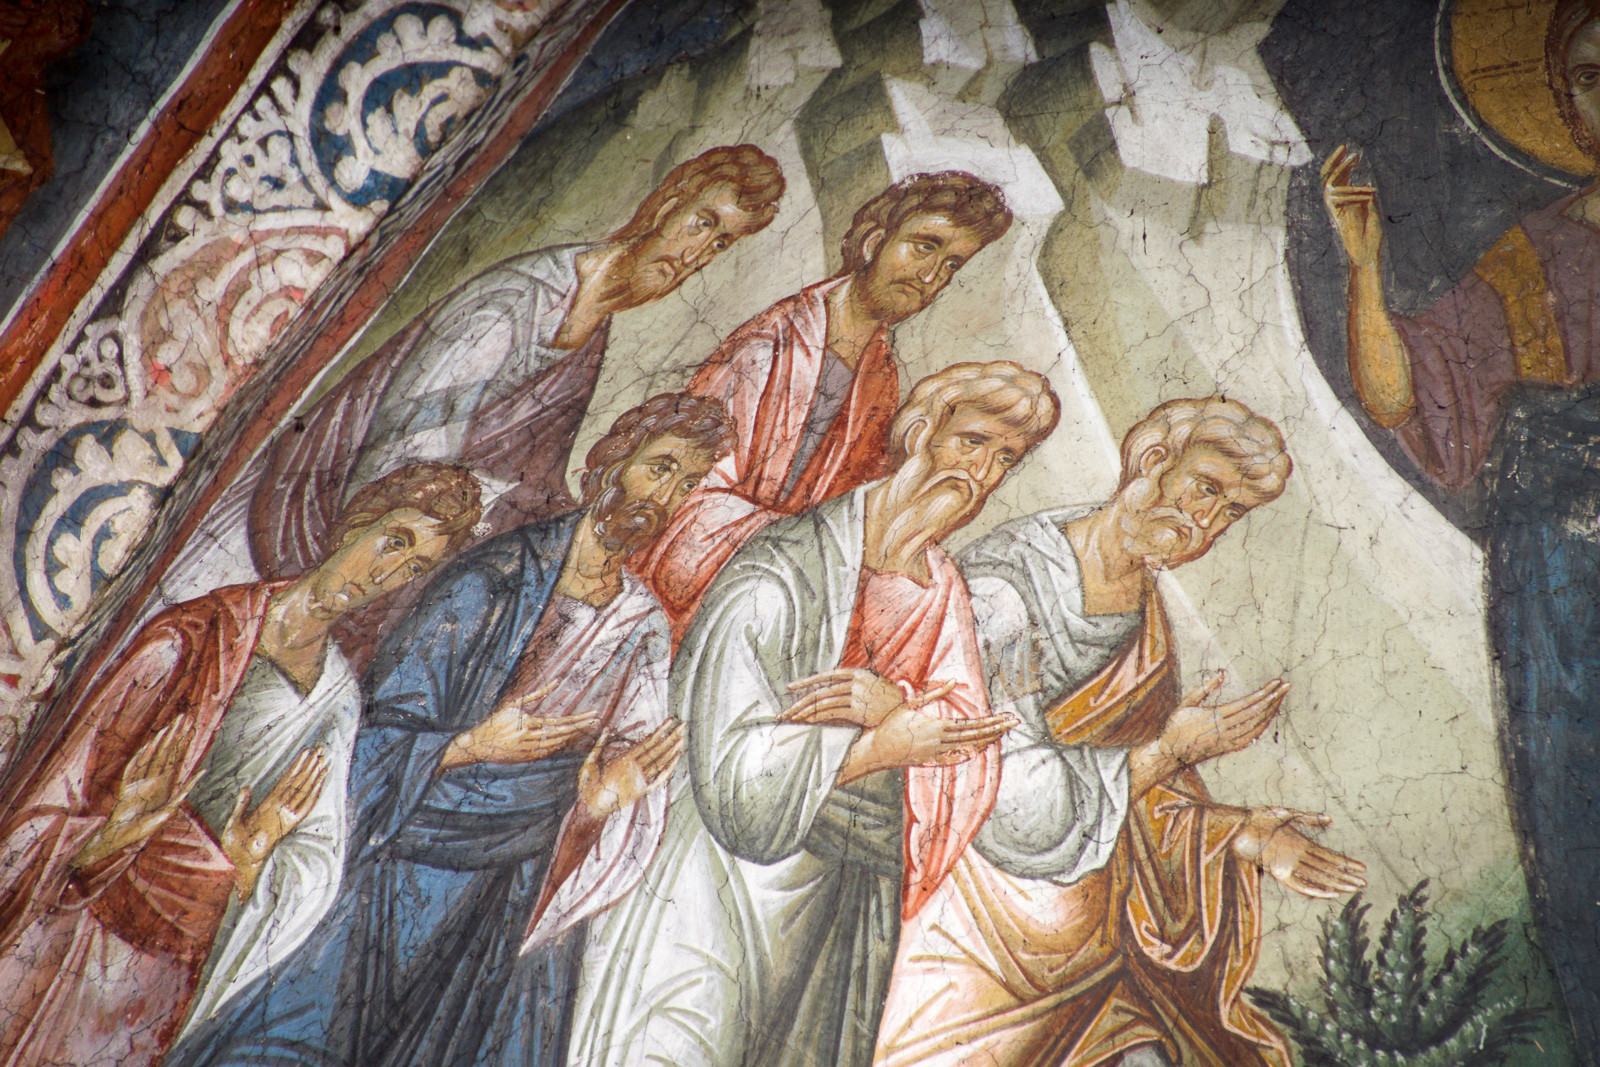 Христос се јавља Апостолима на Гори Галилејској, детаљ